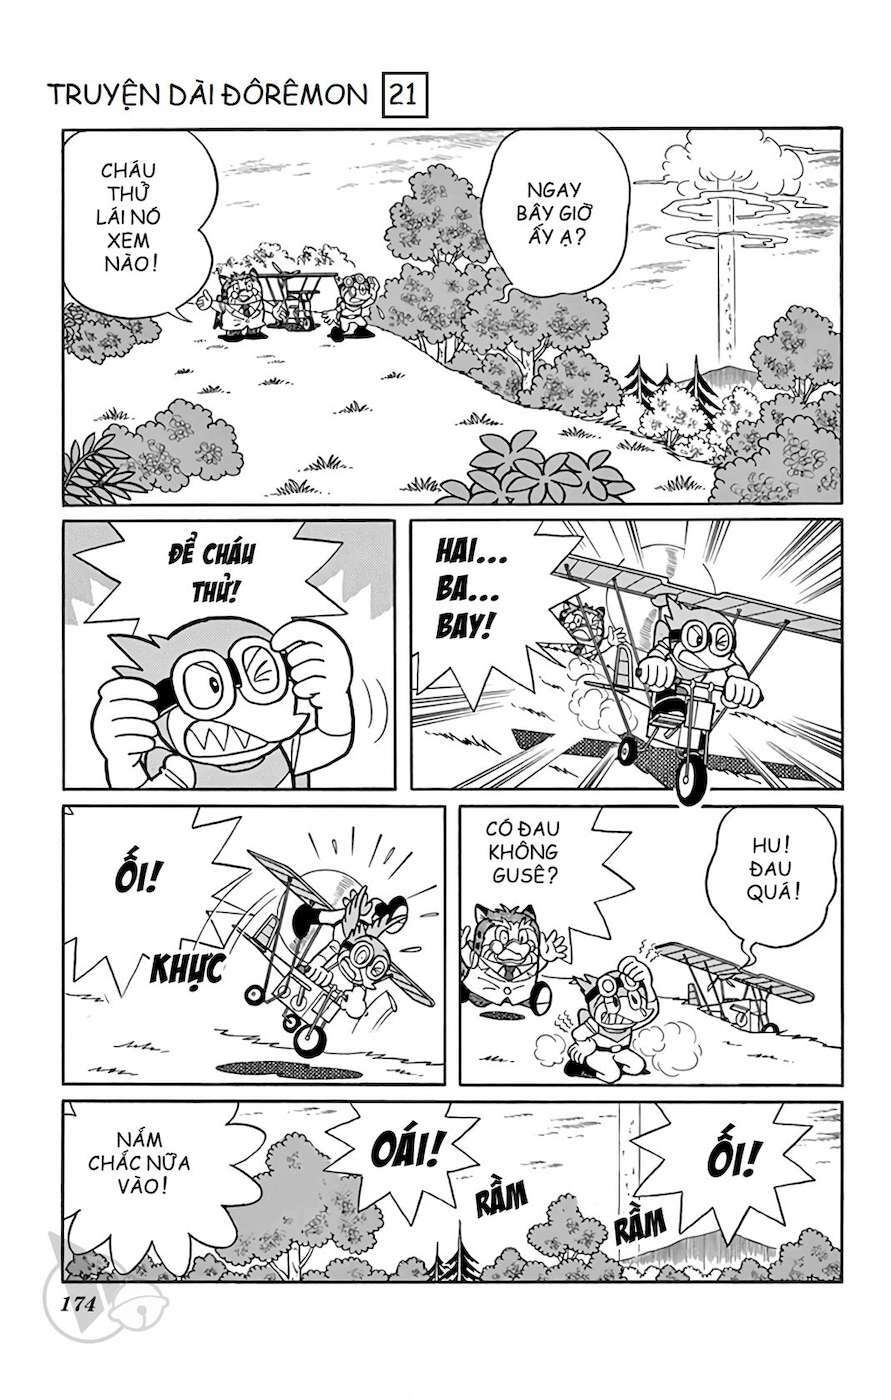 Truyện Tranh Doraemon: Du Hành Đến Vương Quốc Loài Chim trang 173